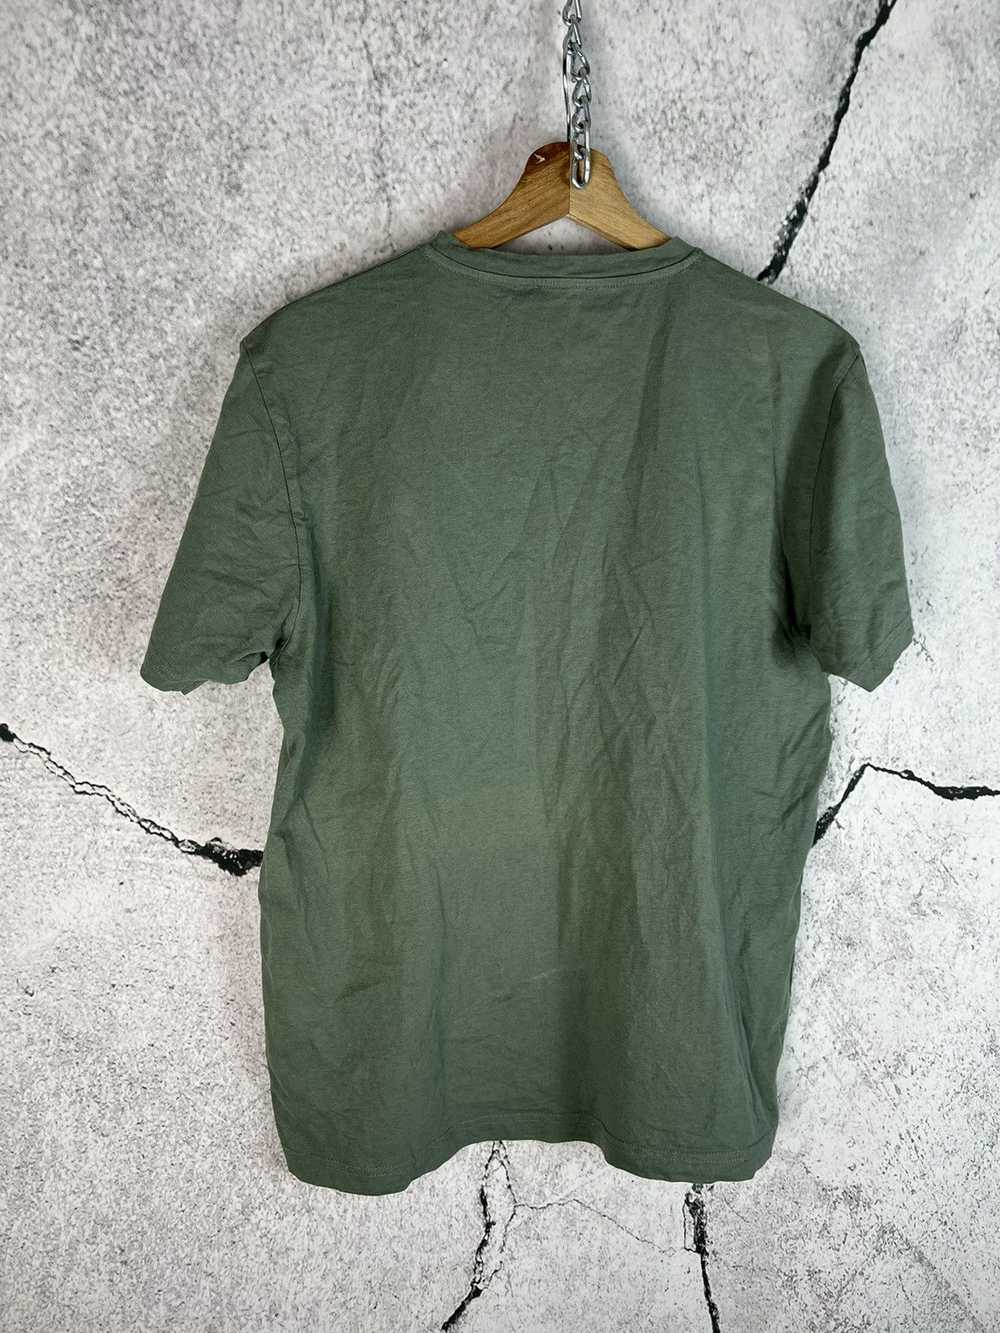 Sunspel Sunspel England Cotton T-Shirt Tee - Size… - image 2